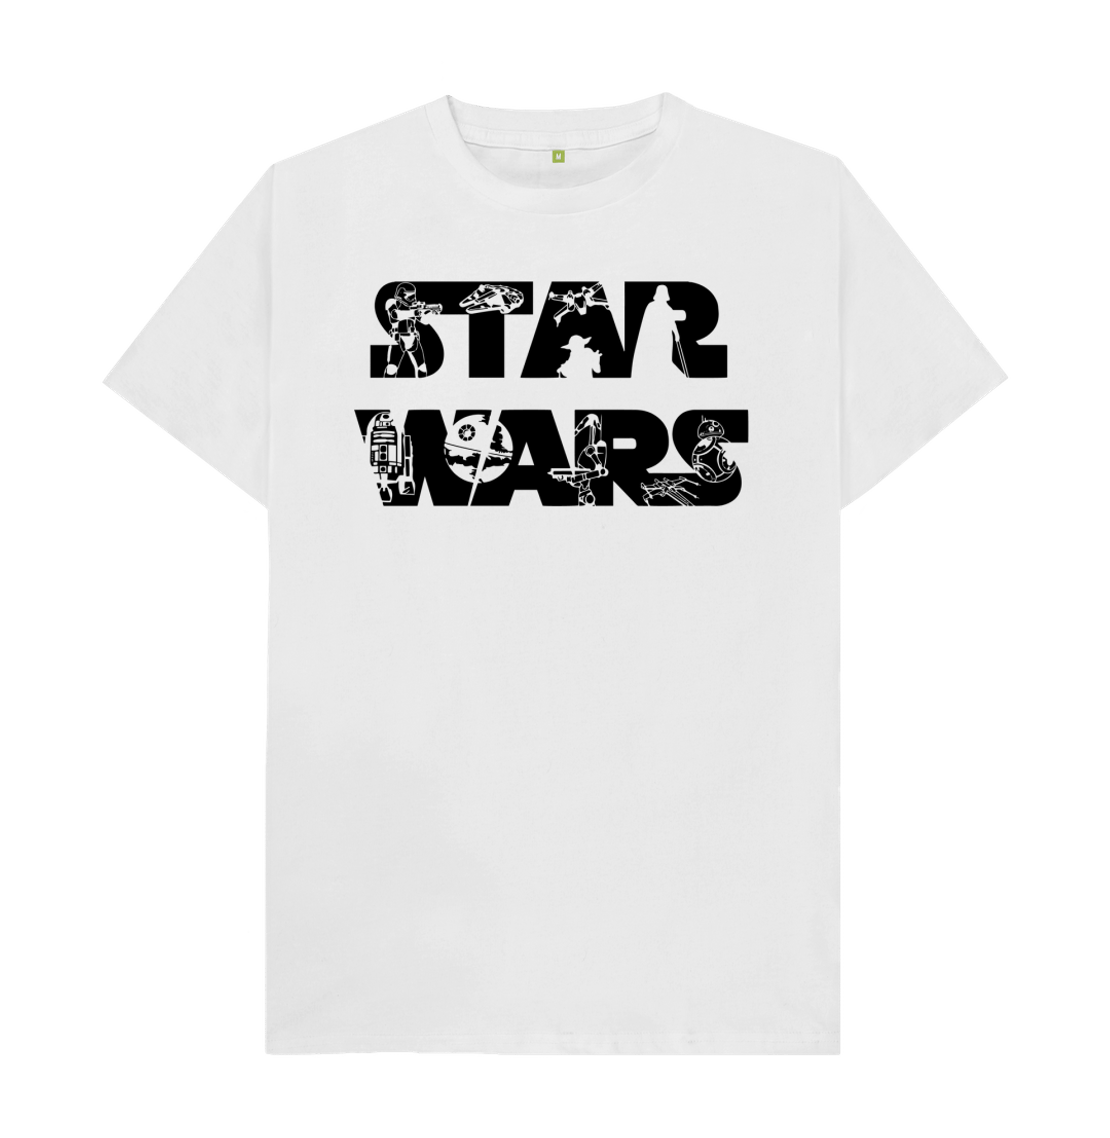 Star Wars T-Shirts and Hoodies - Shop Modern and Contemporary Apparel at  Masihandmasih